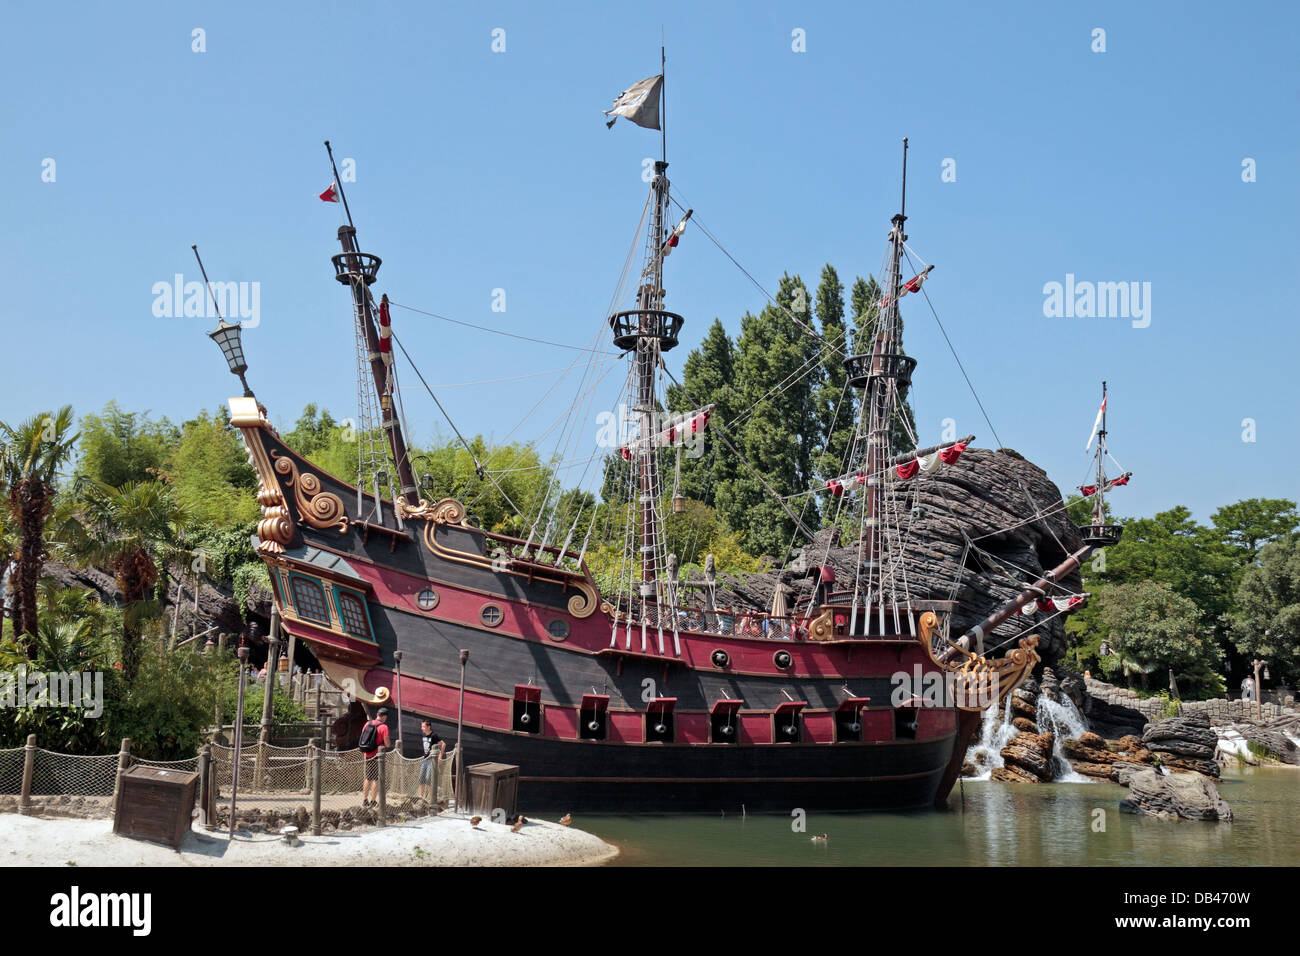 La nave dei pirati, parte dei Pirati' spiaggia (La Plage des pirati) in Disneyland Parigi, Marne-la-Vallée, nei pressi di Parigi, Francia. Foto Stock